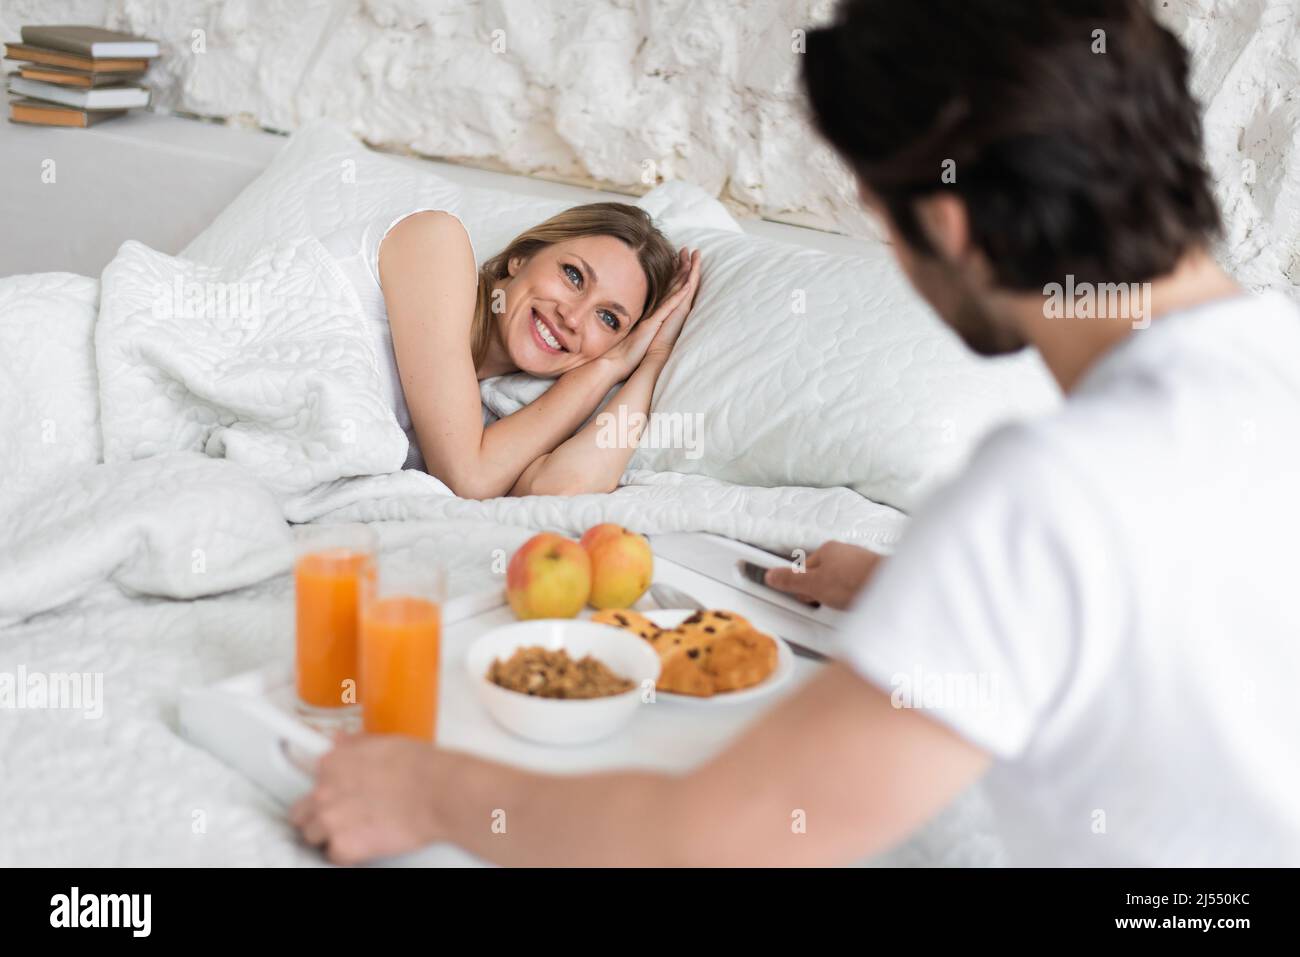 Romantischer junger Mann, der für seine geliebte Frau zu Hause Frühstück  ins Bett bringt Stockfotografie - Alamy